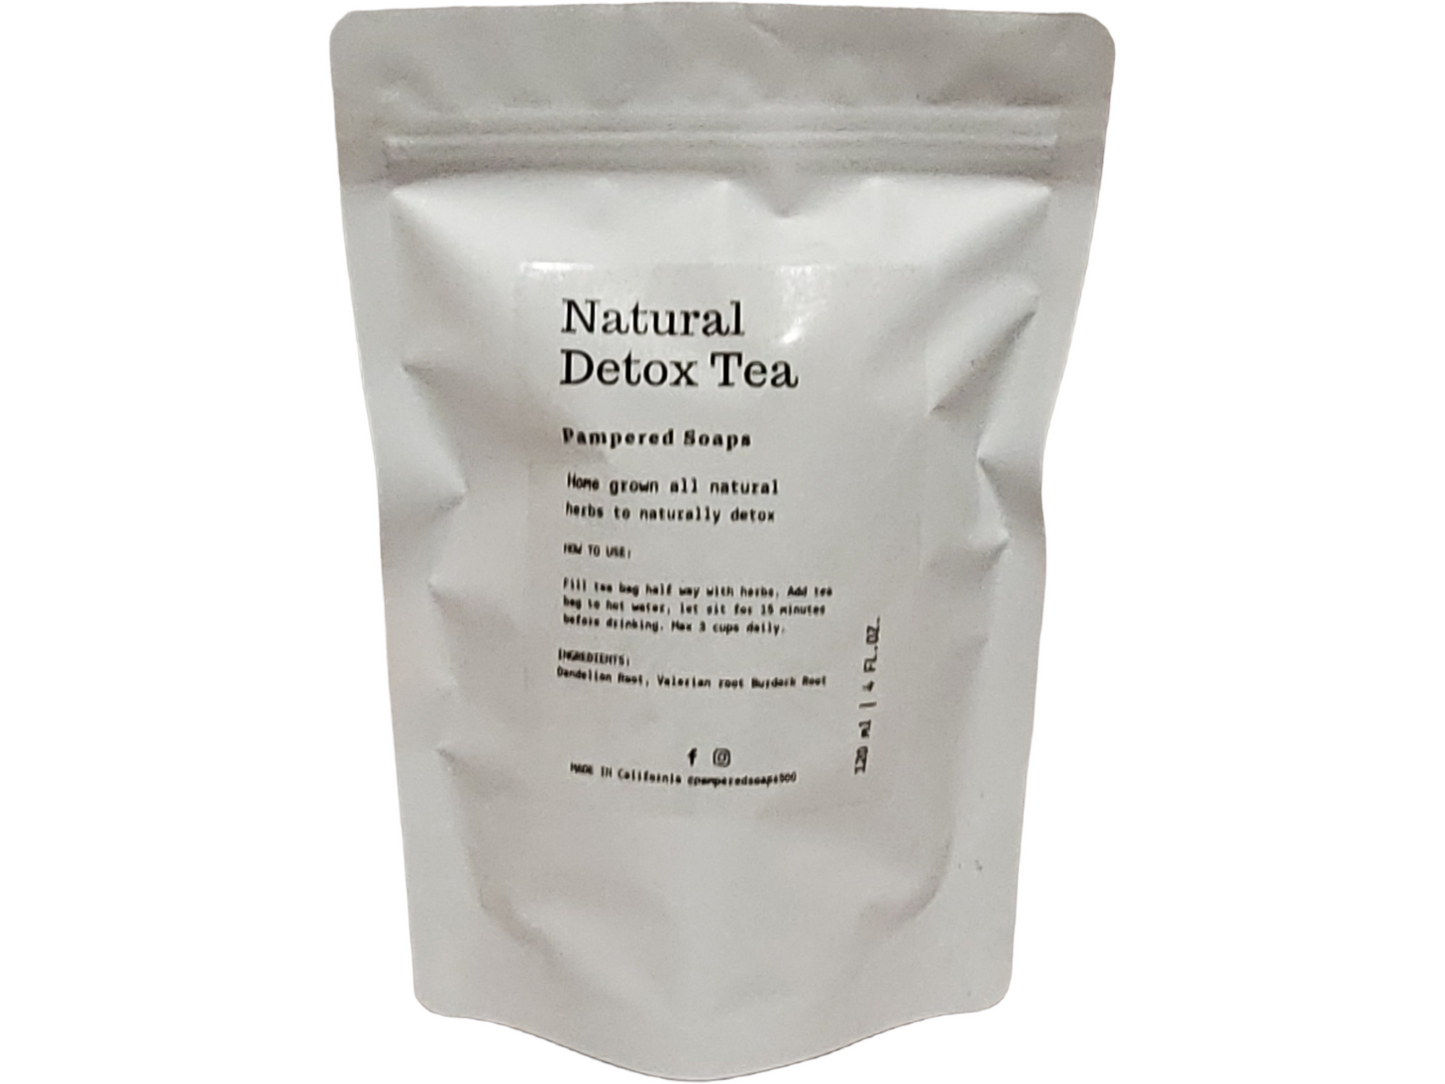 All Natural Detox Tea